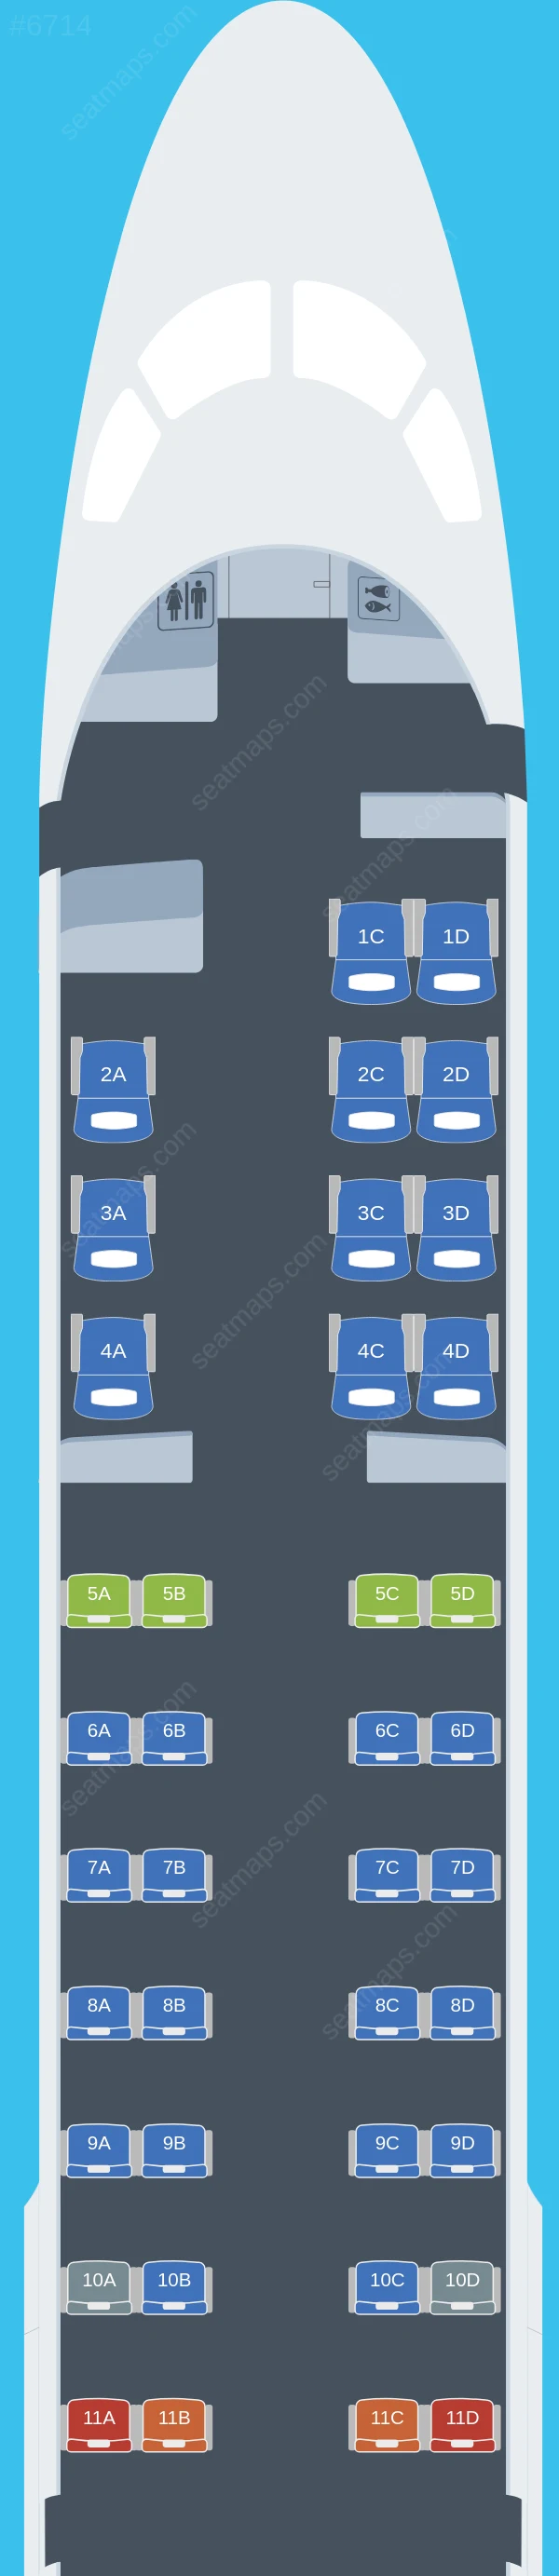 AeroMexico Connect - Aerolitoral Embraer E190 seatmap preview